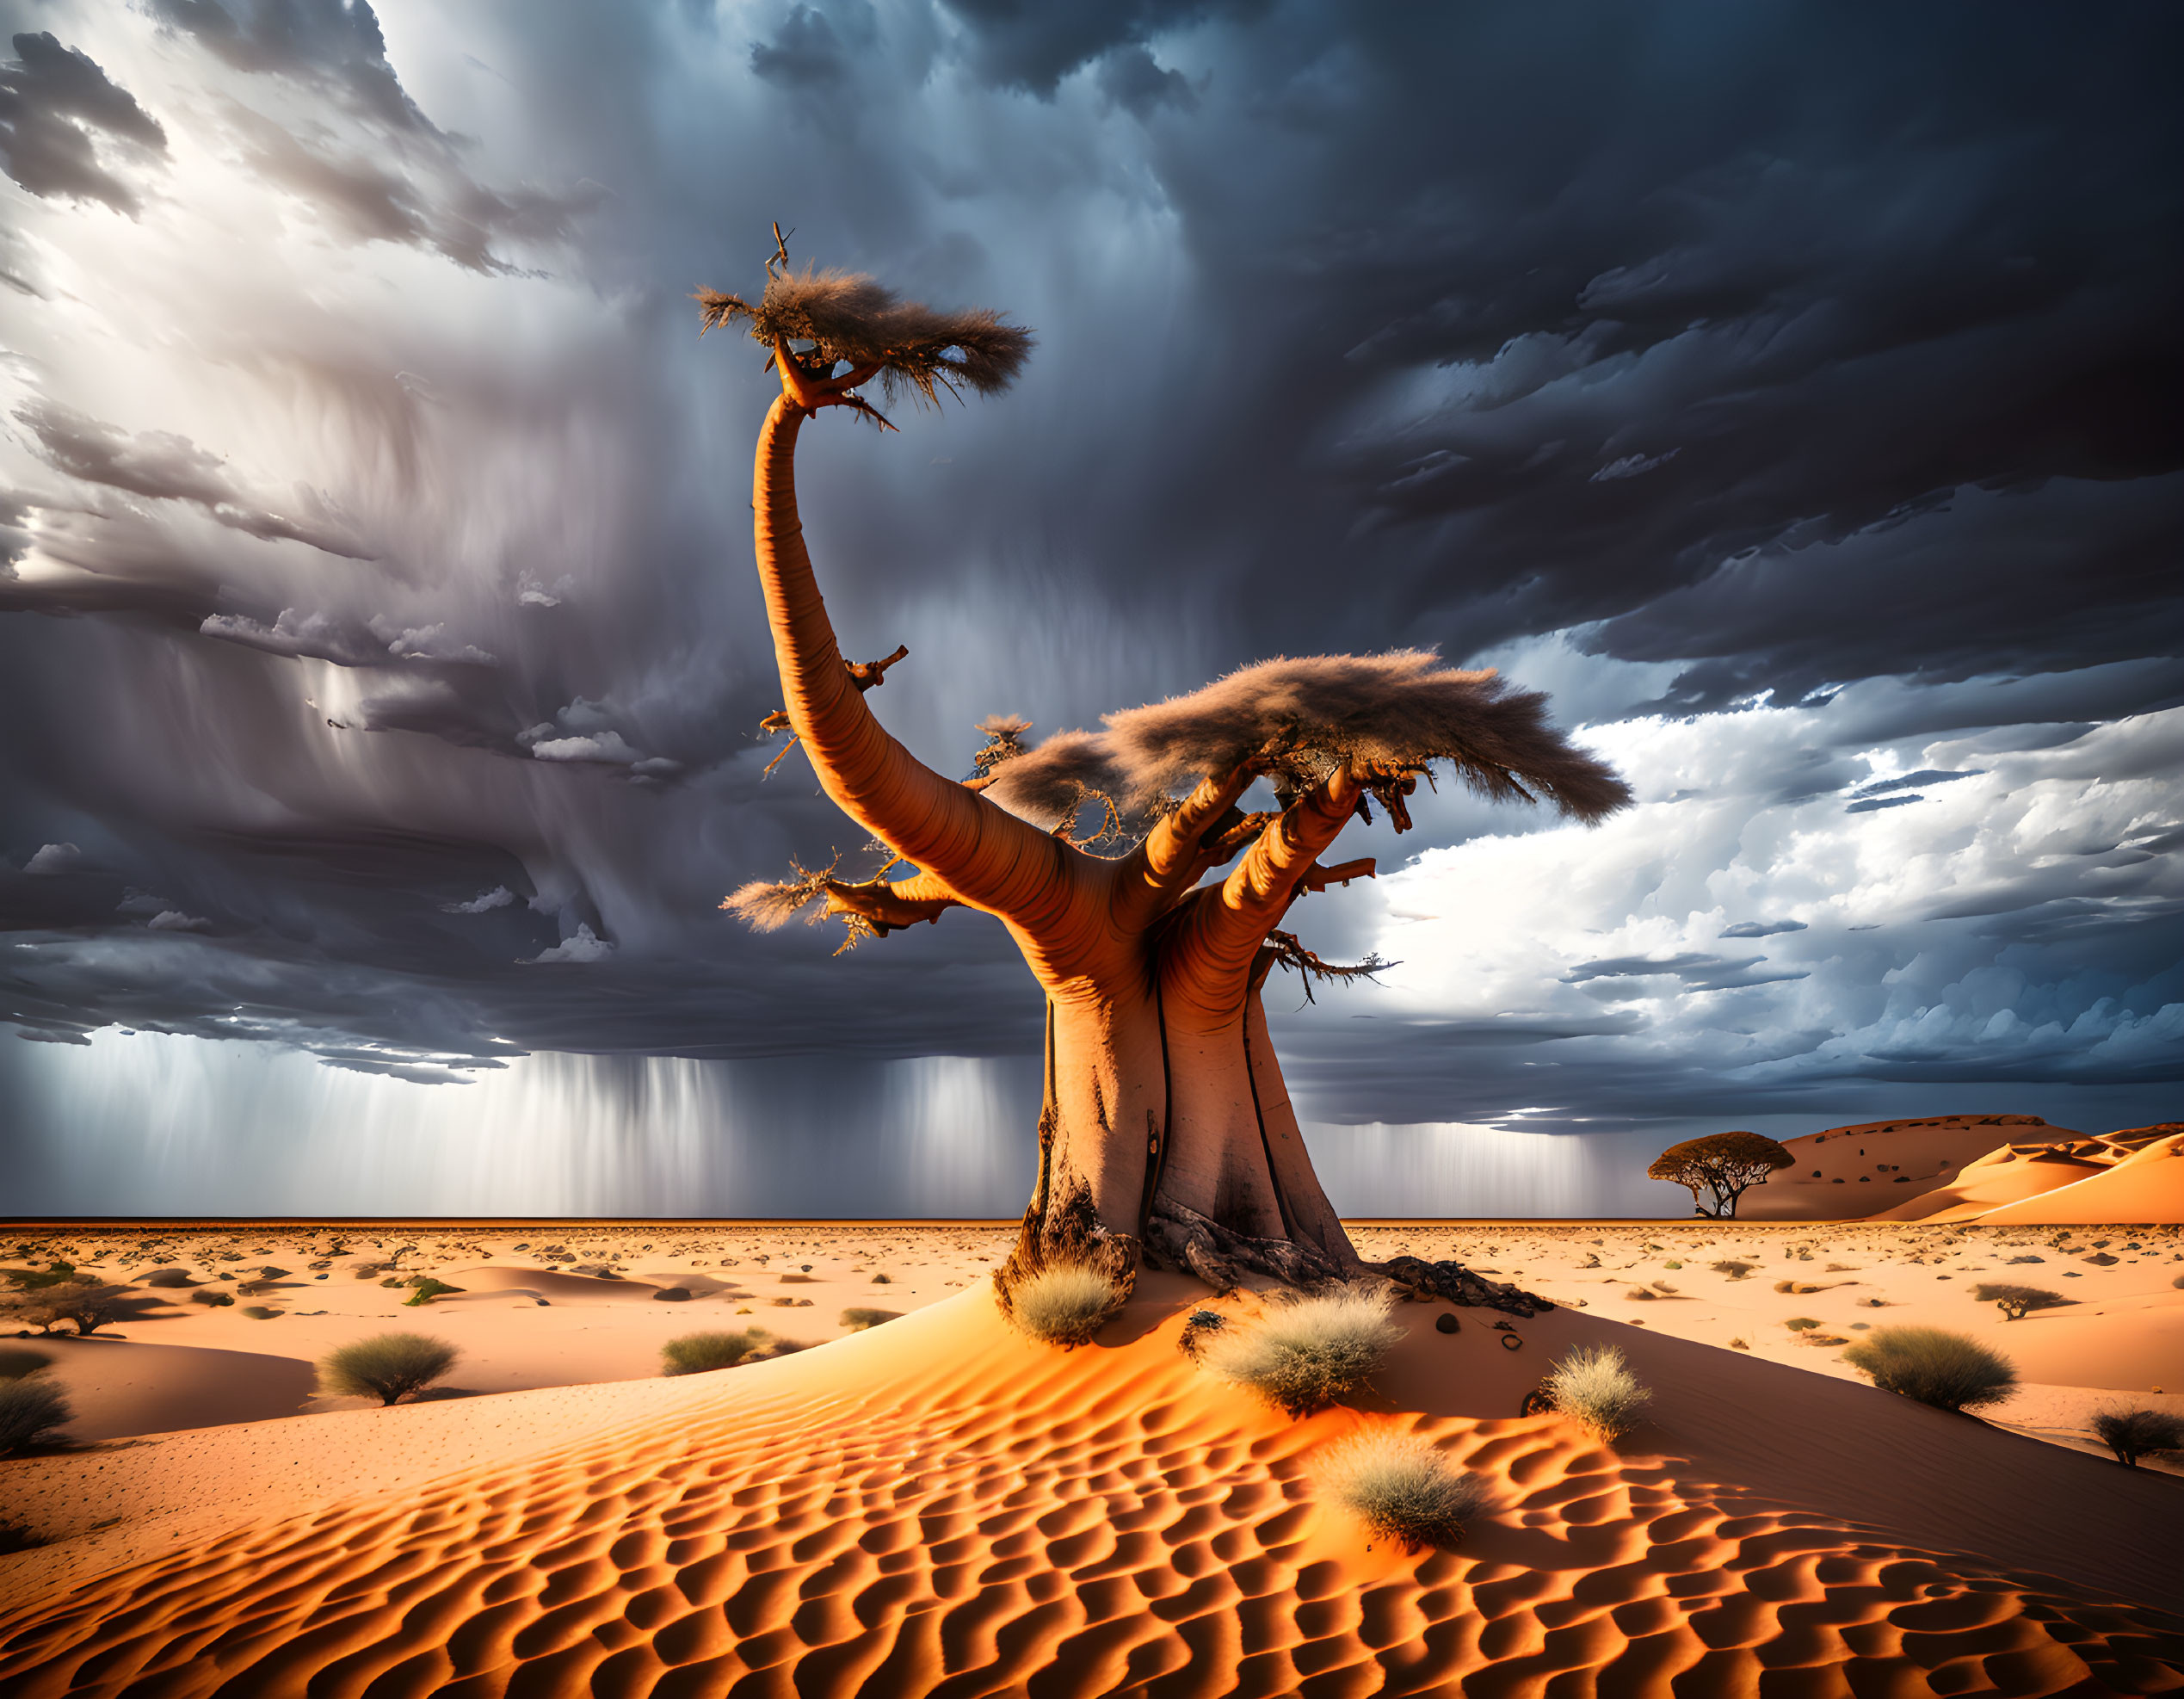 Baobab in the desert